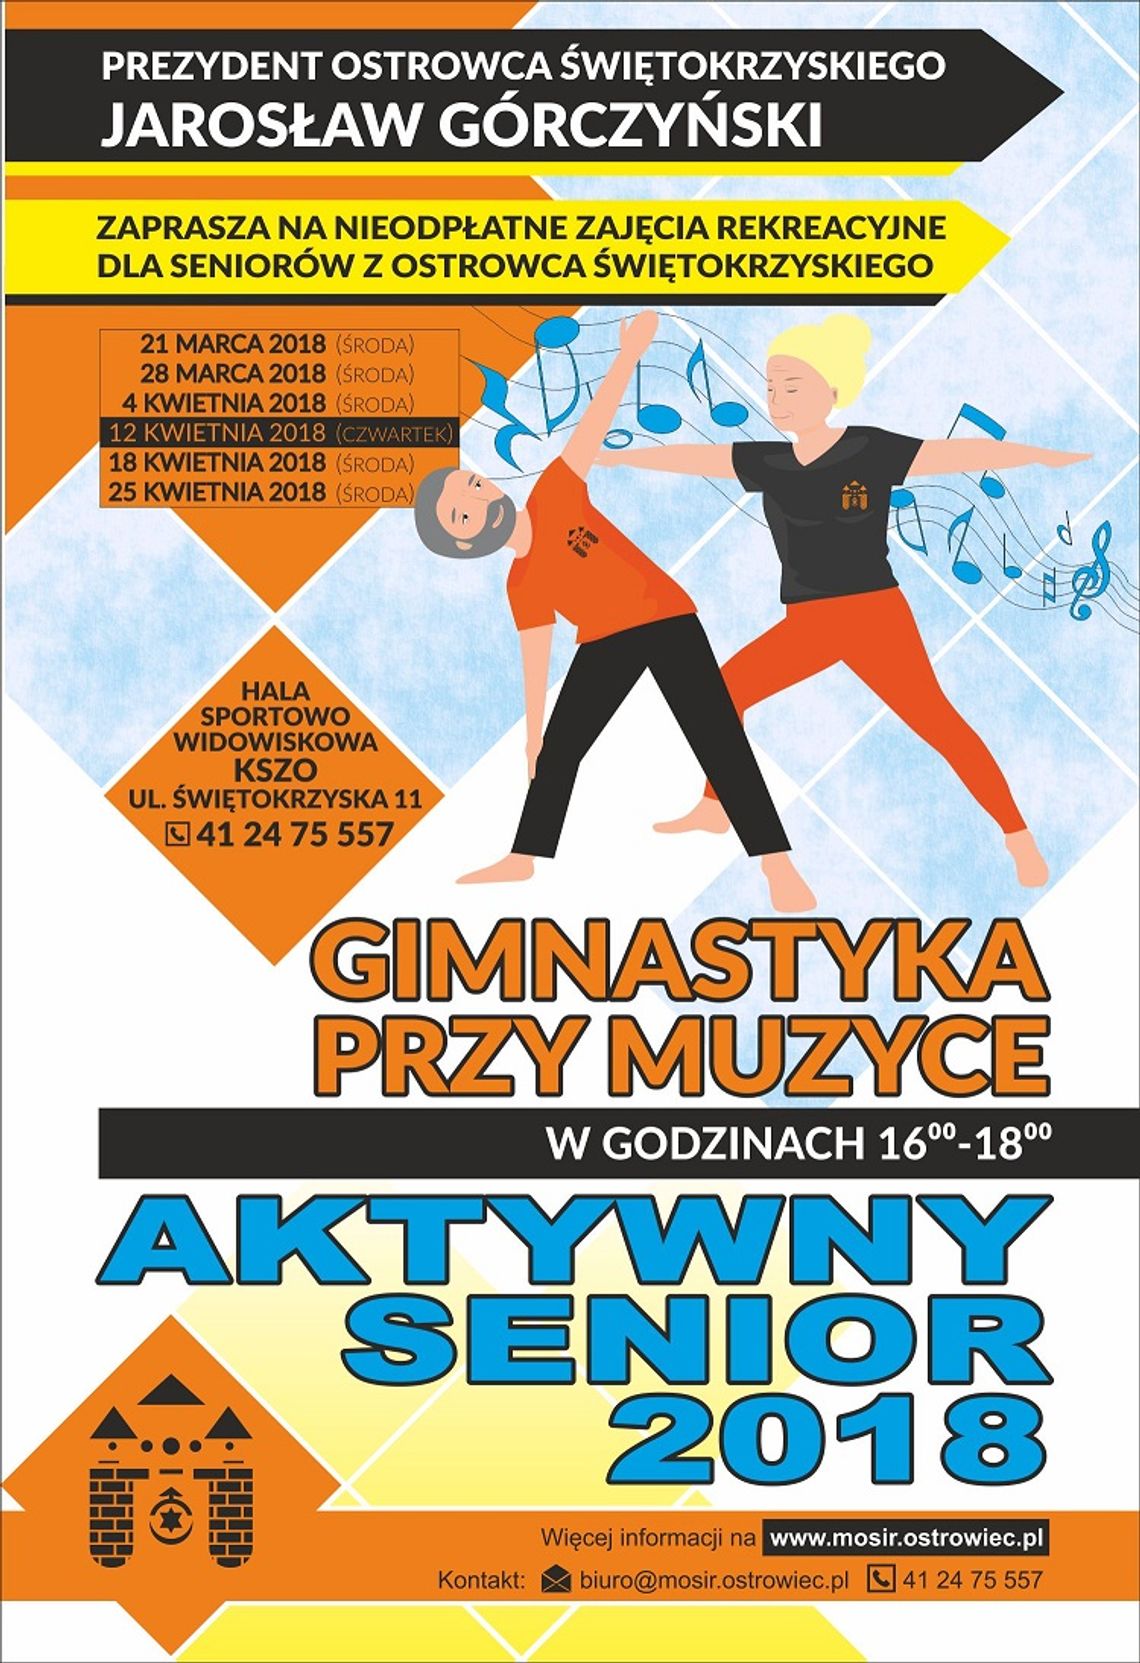 Aktywny Senior 2018 - gimnastyka przy muzyce